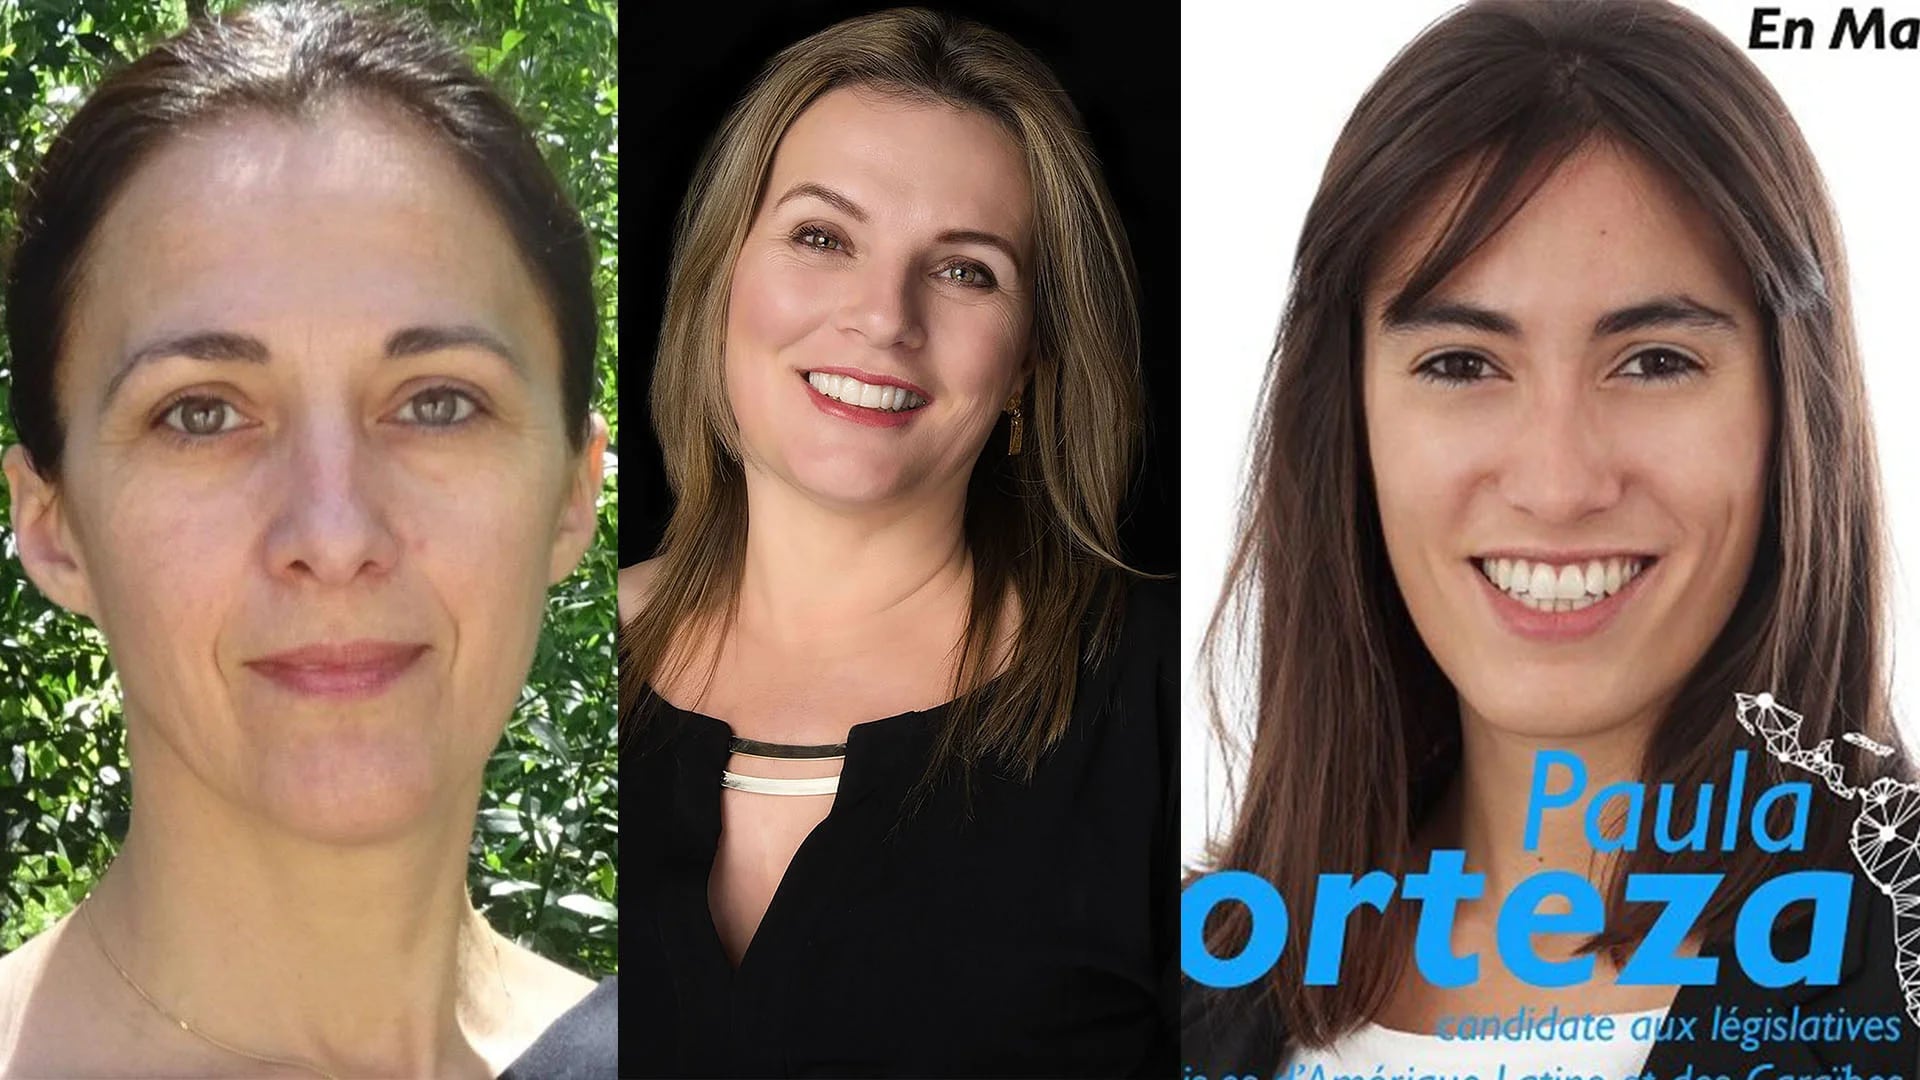 Stéphanie Lahana, Florence Baillon, Paula Forteza: tres de las candidatas a representar a los franceses que residen en América Latina